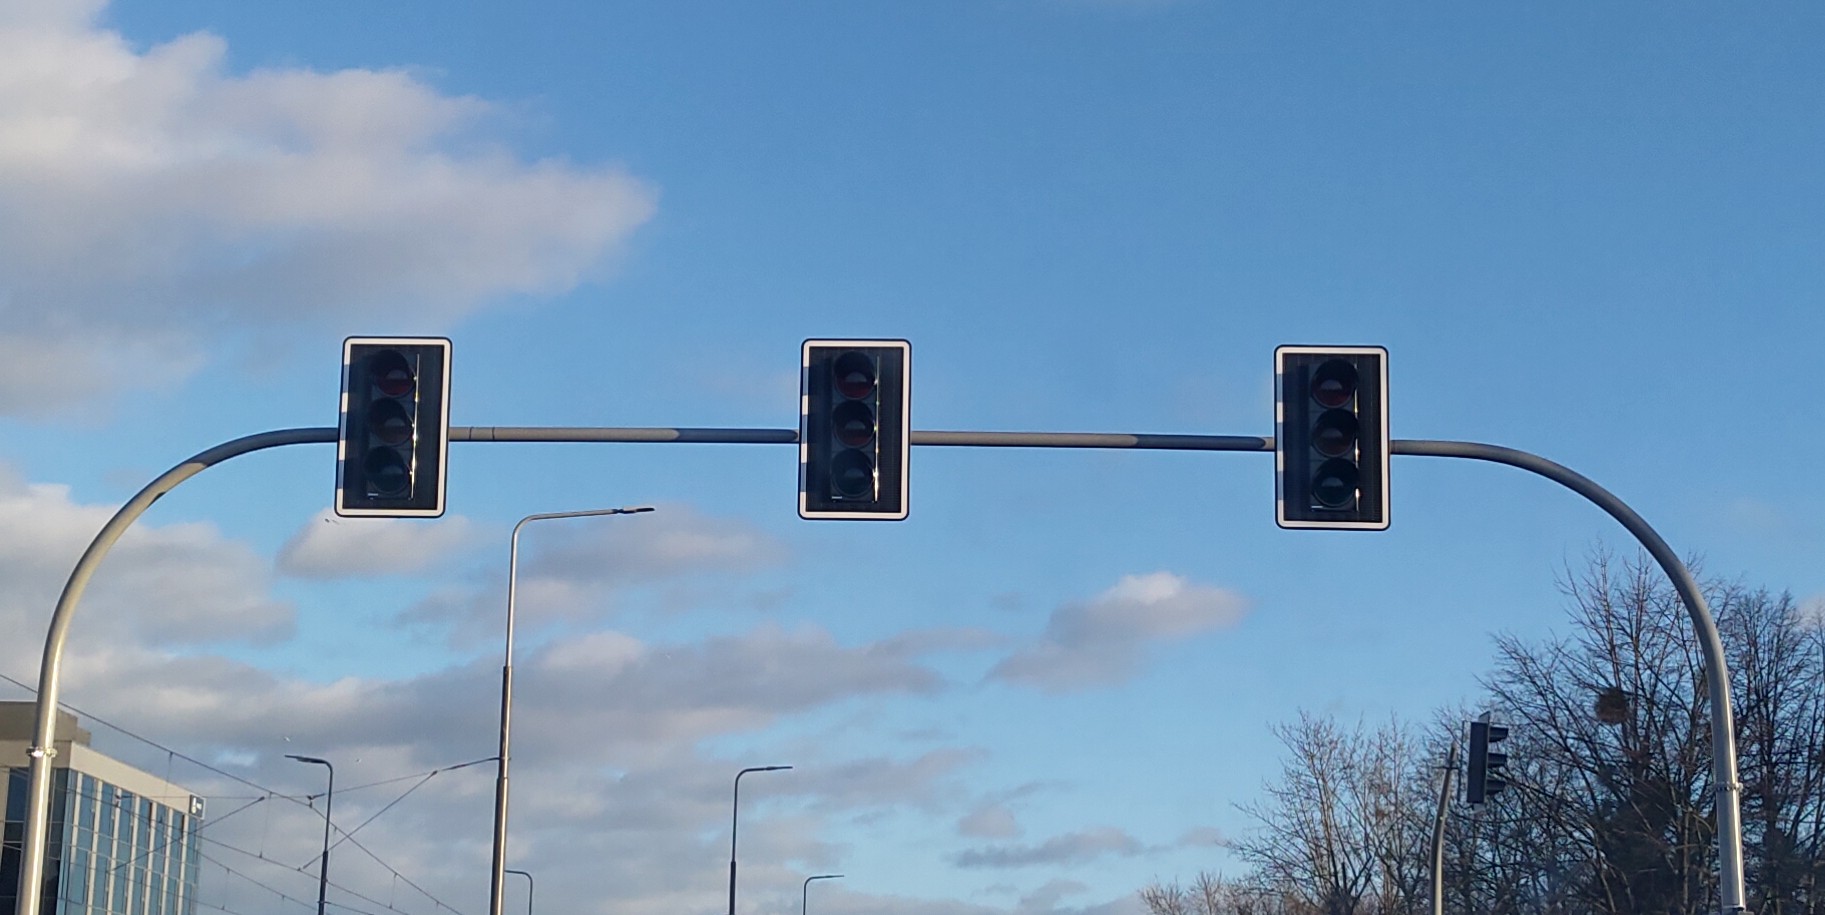 Wyłączenia sygnalizacji świetlnych na dwóch skrzyżowaniach